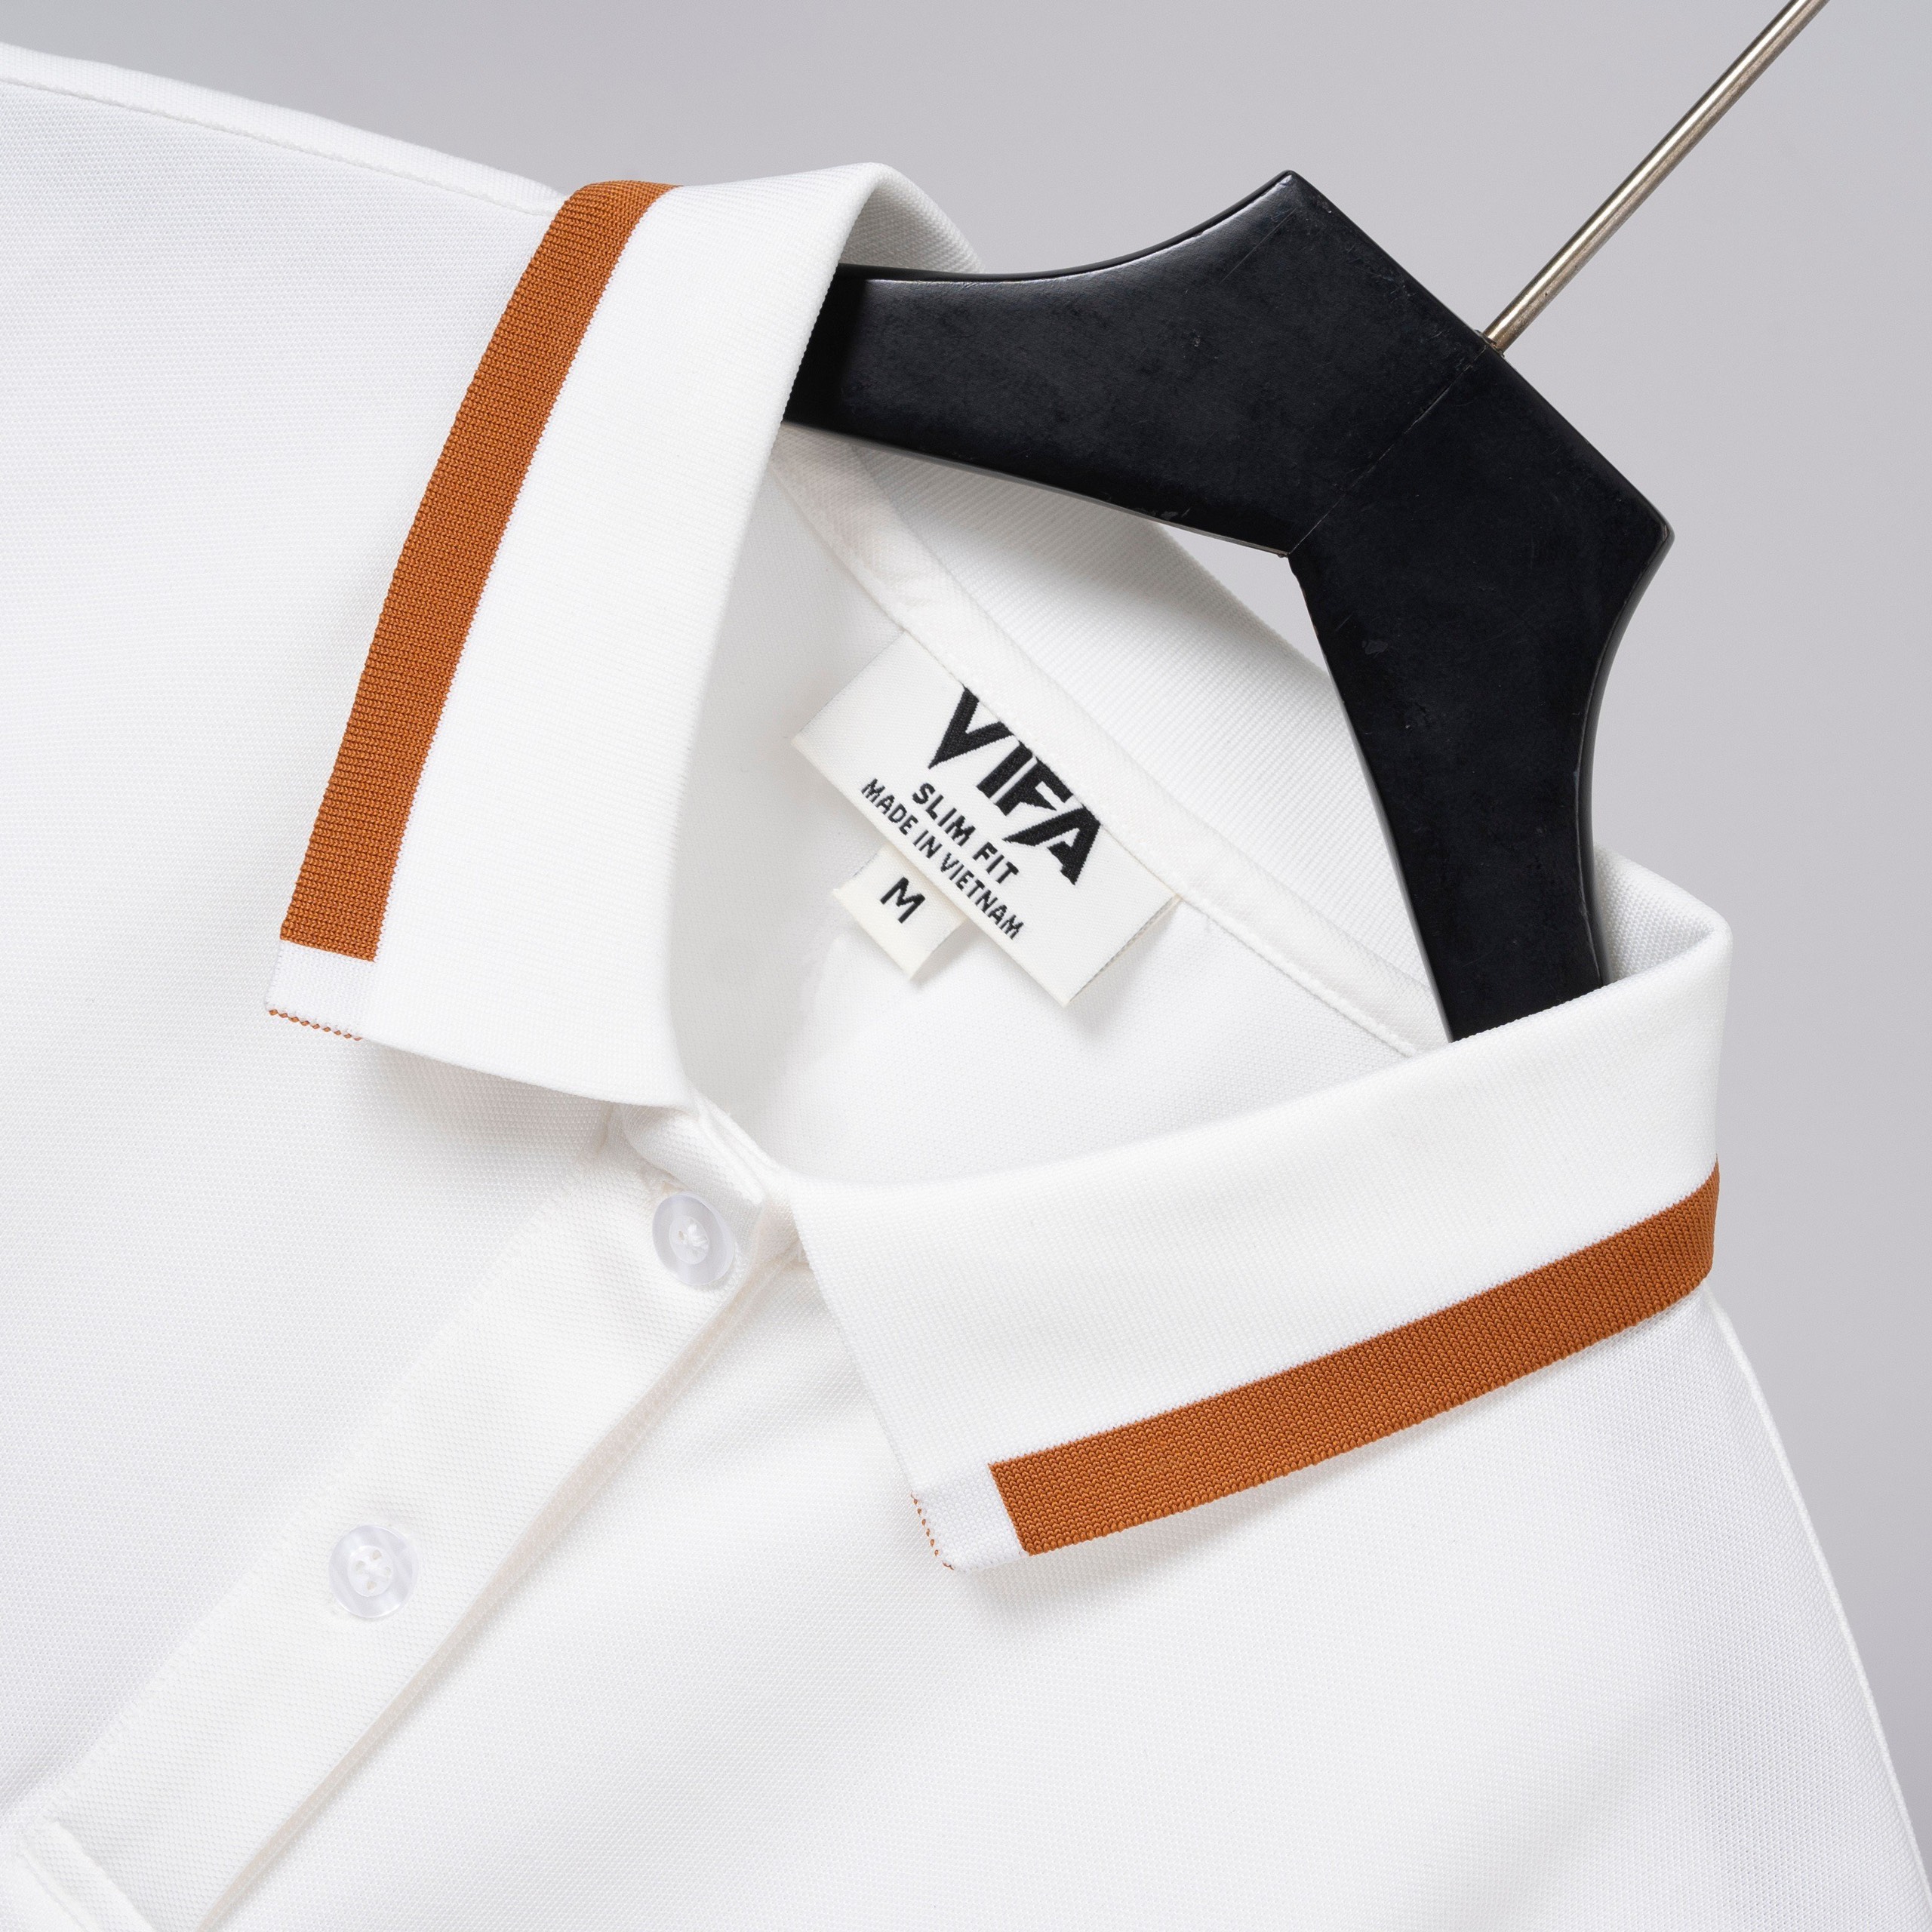 Áo thun nam nữ polo phong cách công sở, hàng công ty, phom chuẩn, nhẹ nhàng, màu sắc tươi, nhu, dễ mặc…(VF-POLONU)